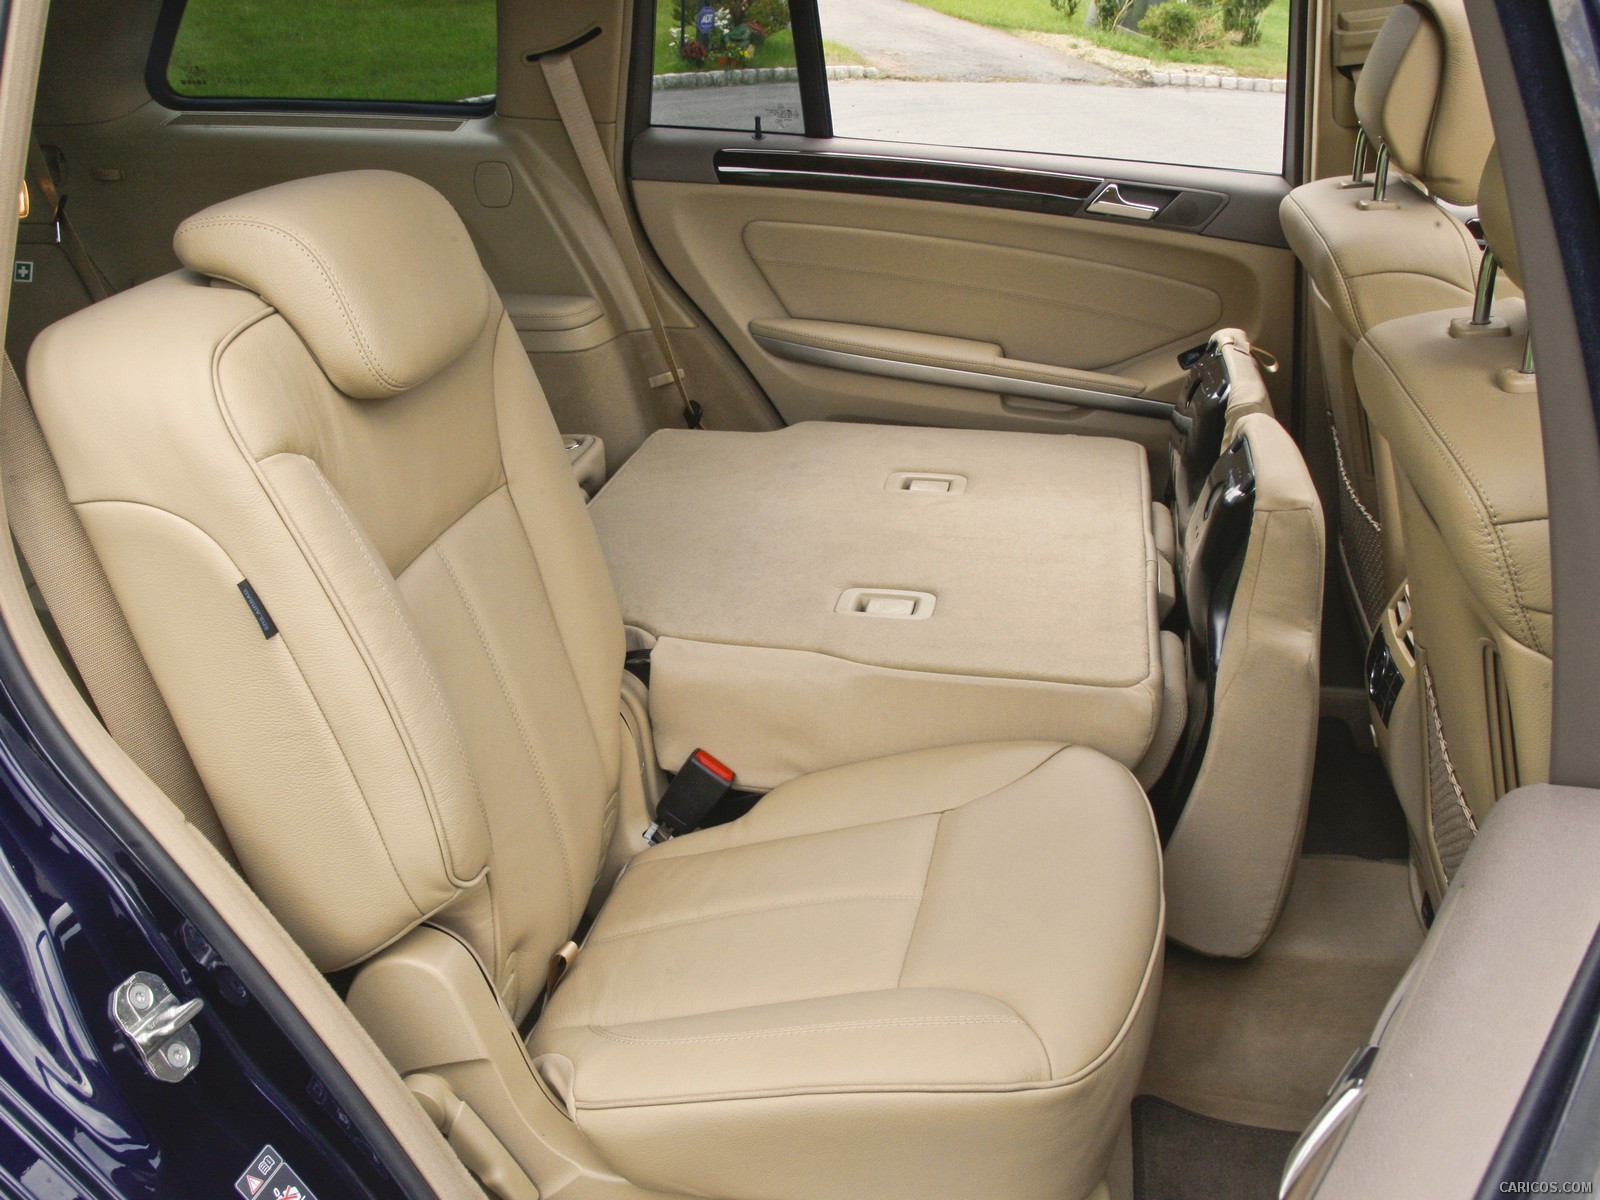 2010 Mercedes-Benz GL450 - Interior Rear Seats, #104 of 112